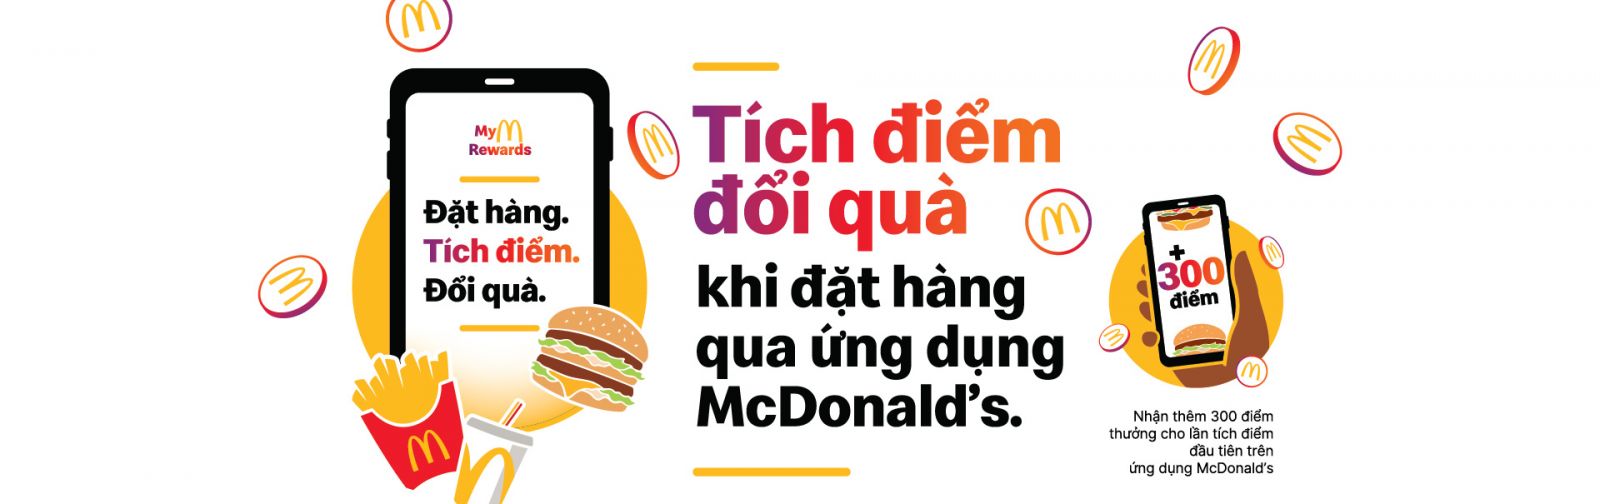 Ứng Dụng McDonald's Chuyên Săn Ưu Đãi Khủng Khi Mua Tại Cửa Hàng